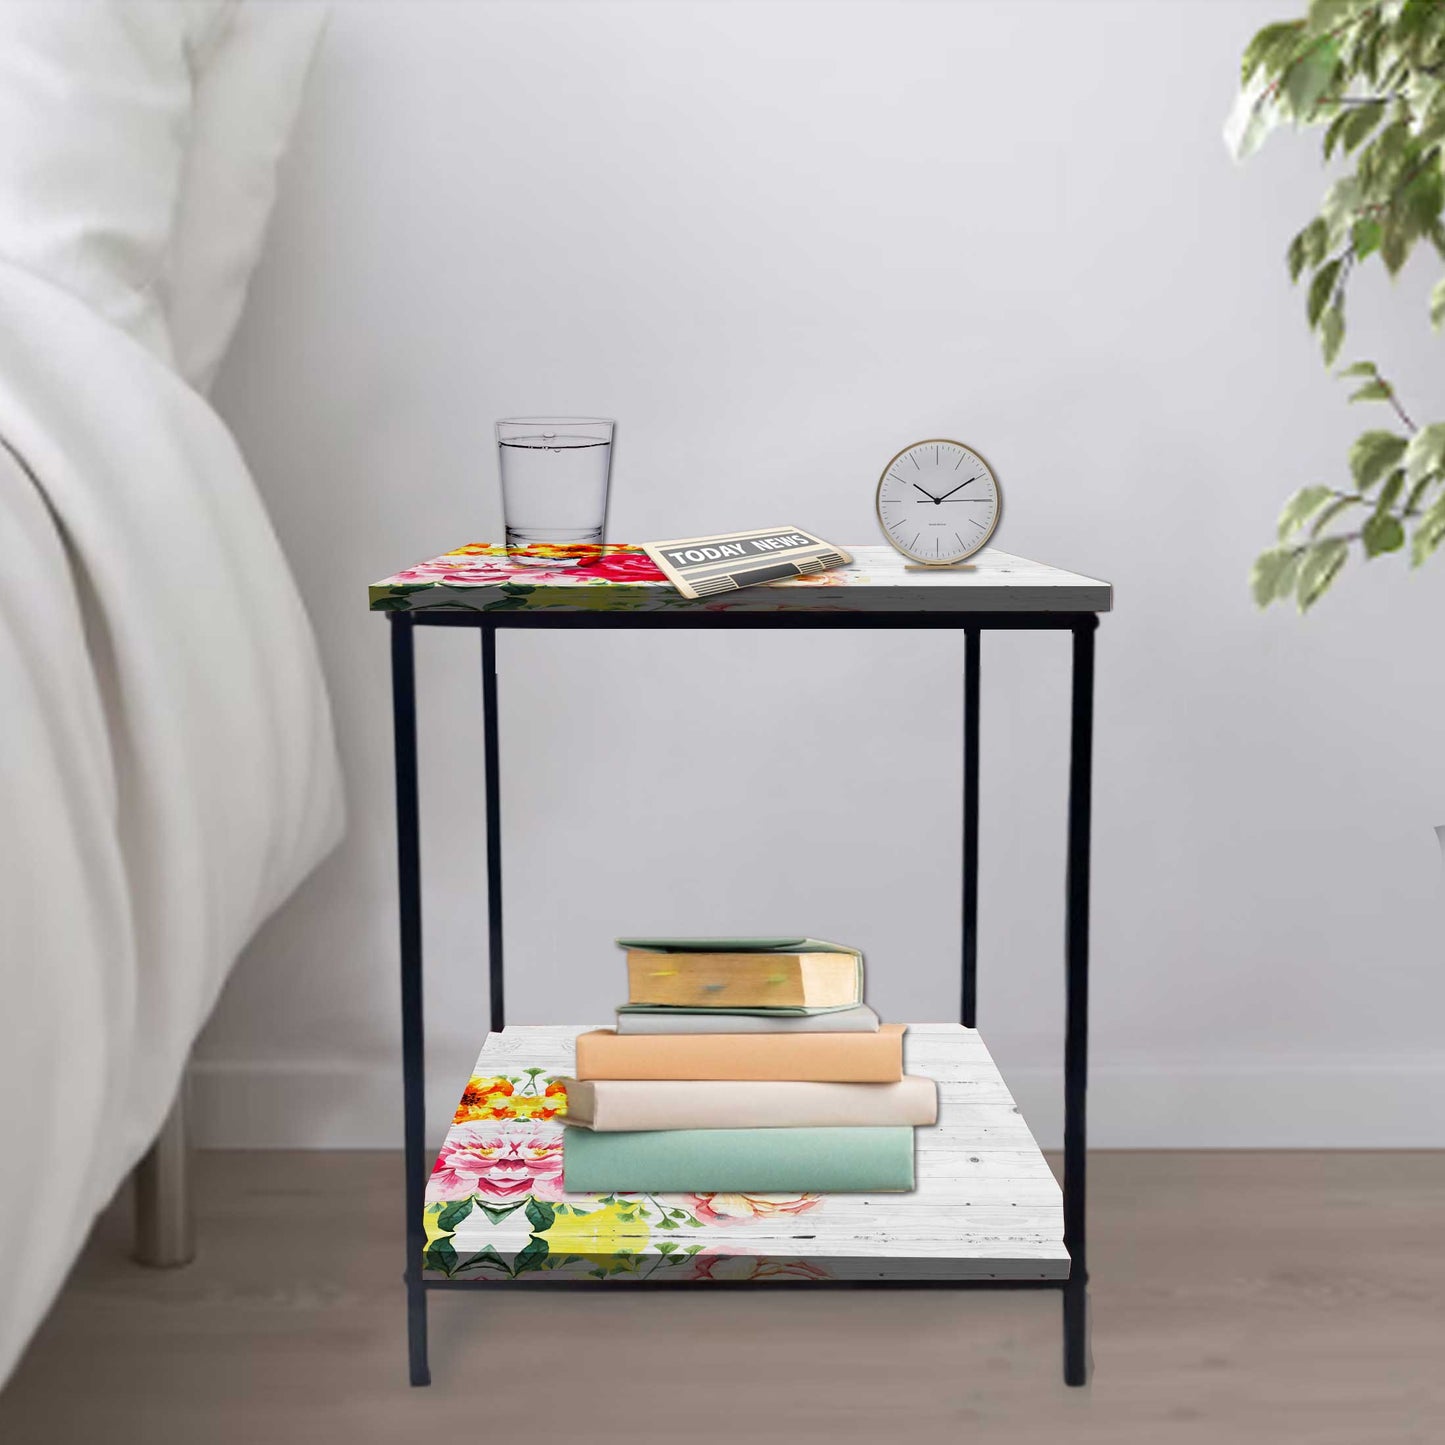 Bedside Dressing Table for Living Room - FLORAL Nutcase